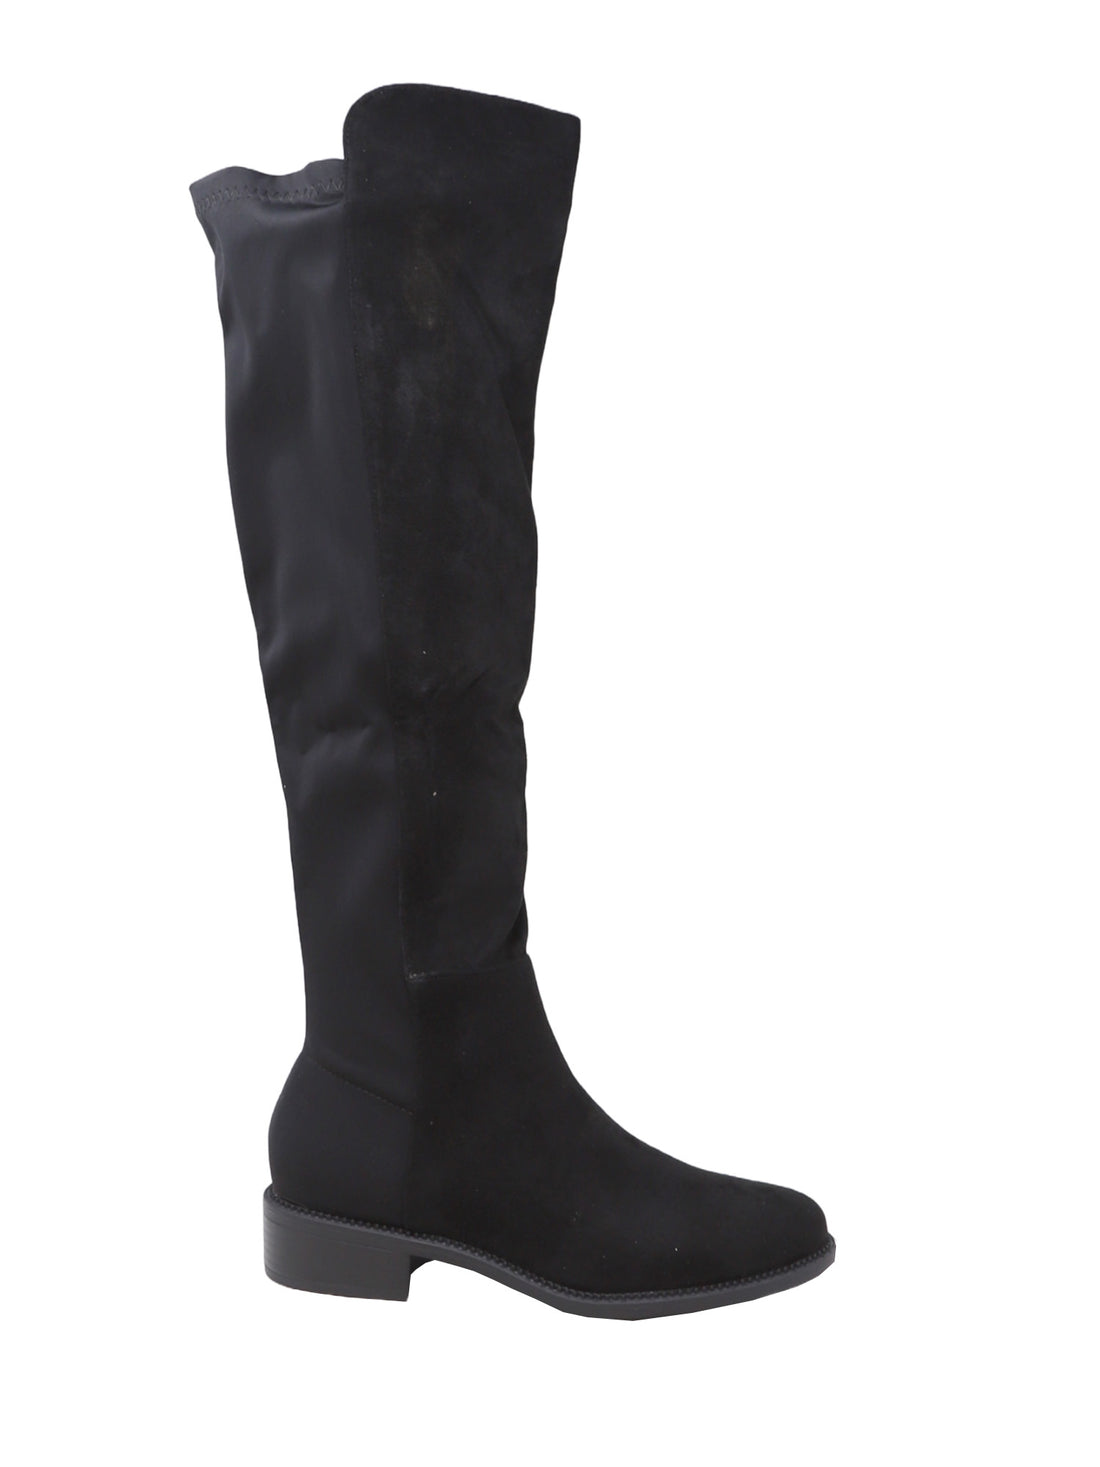 KEYS K-8583 stivali donna con tacco in pelle nero Donna Taglia 41